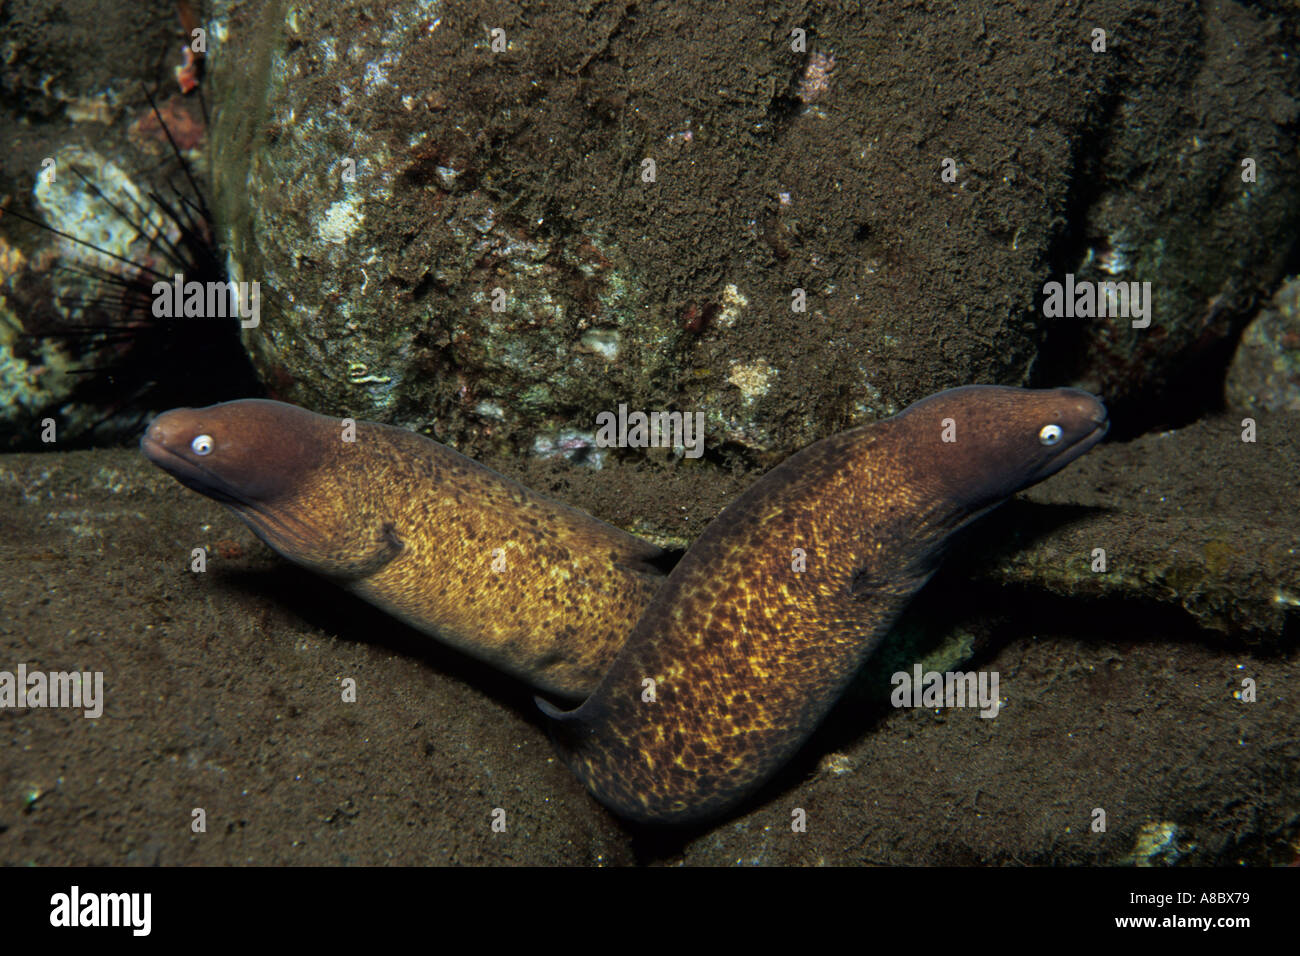 White eyed Moray eels Siderea prosopeion at SSRHR near Tulamben Bali Indonesia Stock Photo